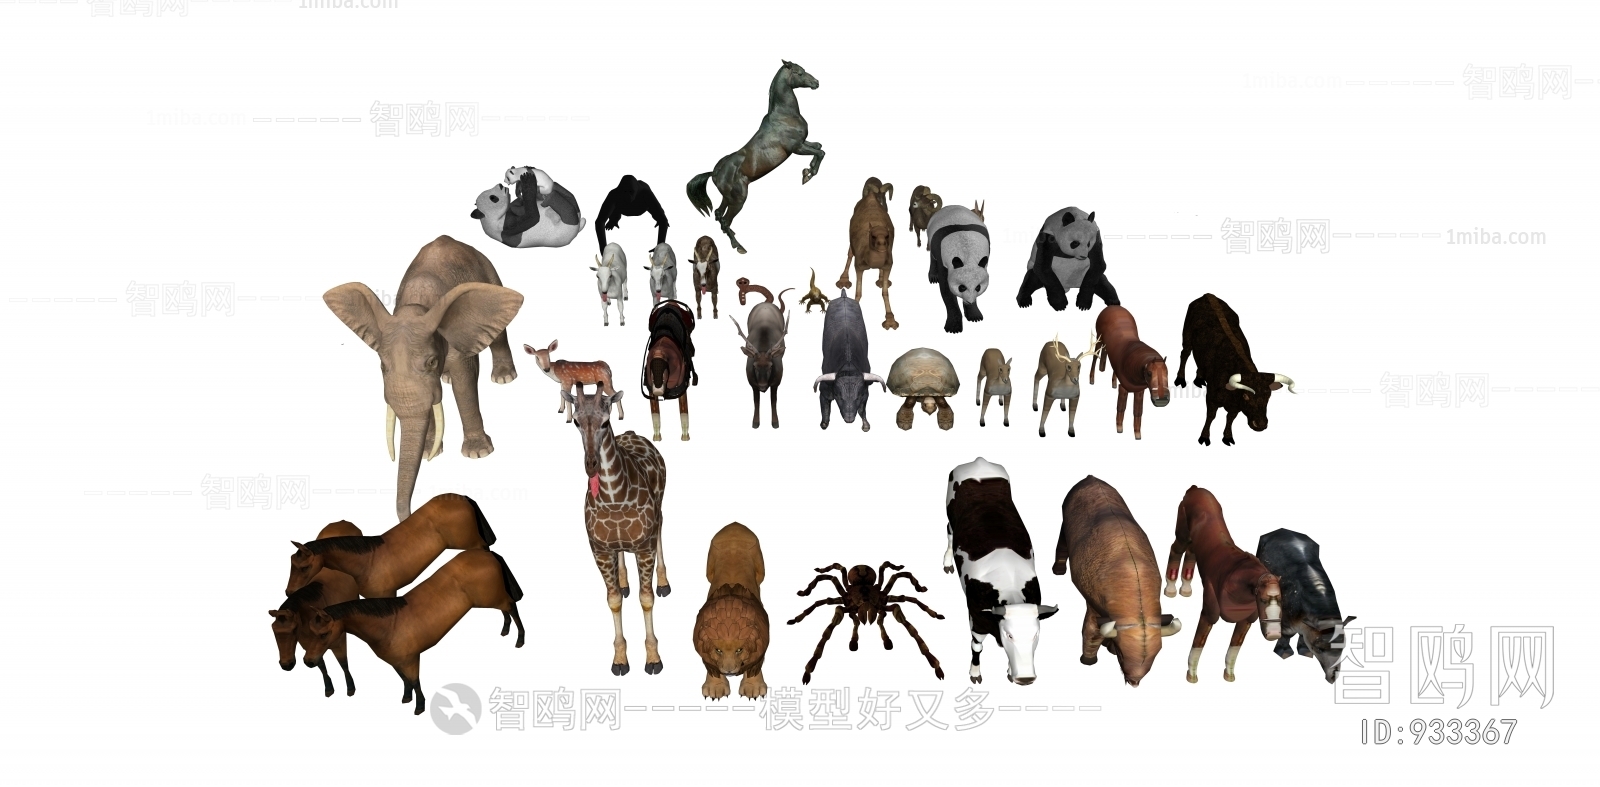 现代恐龙 大象 马 长颈鹿 蜘蛛 牛 羊组合